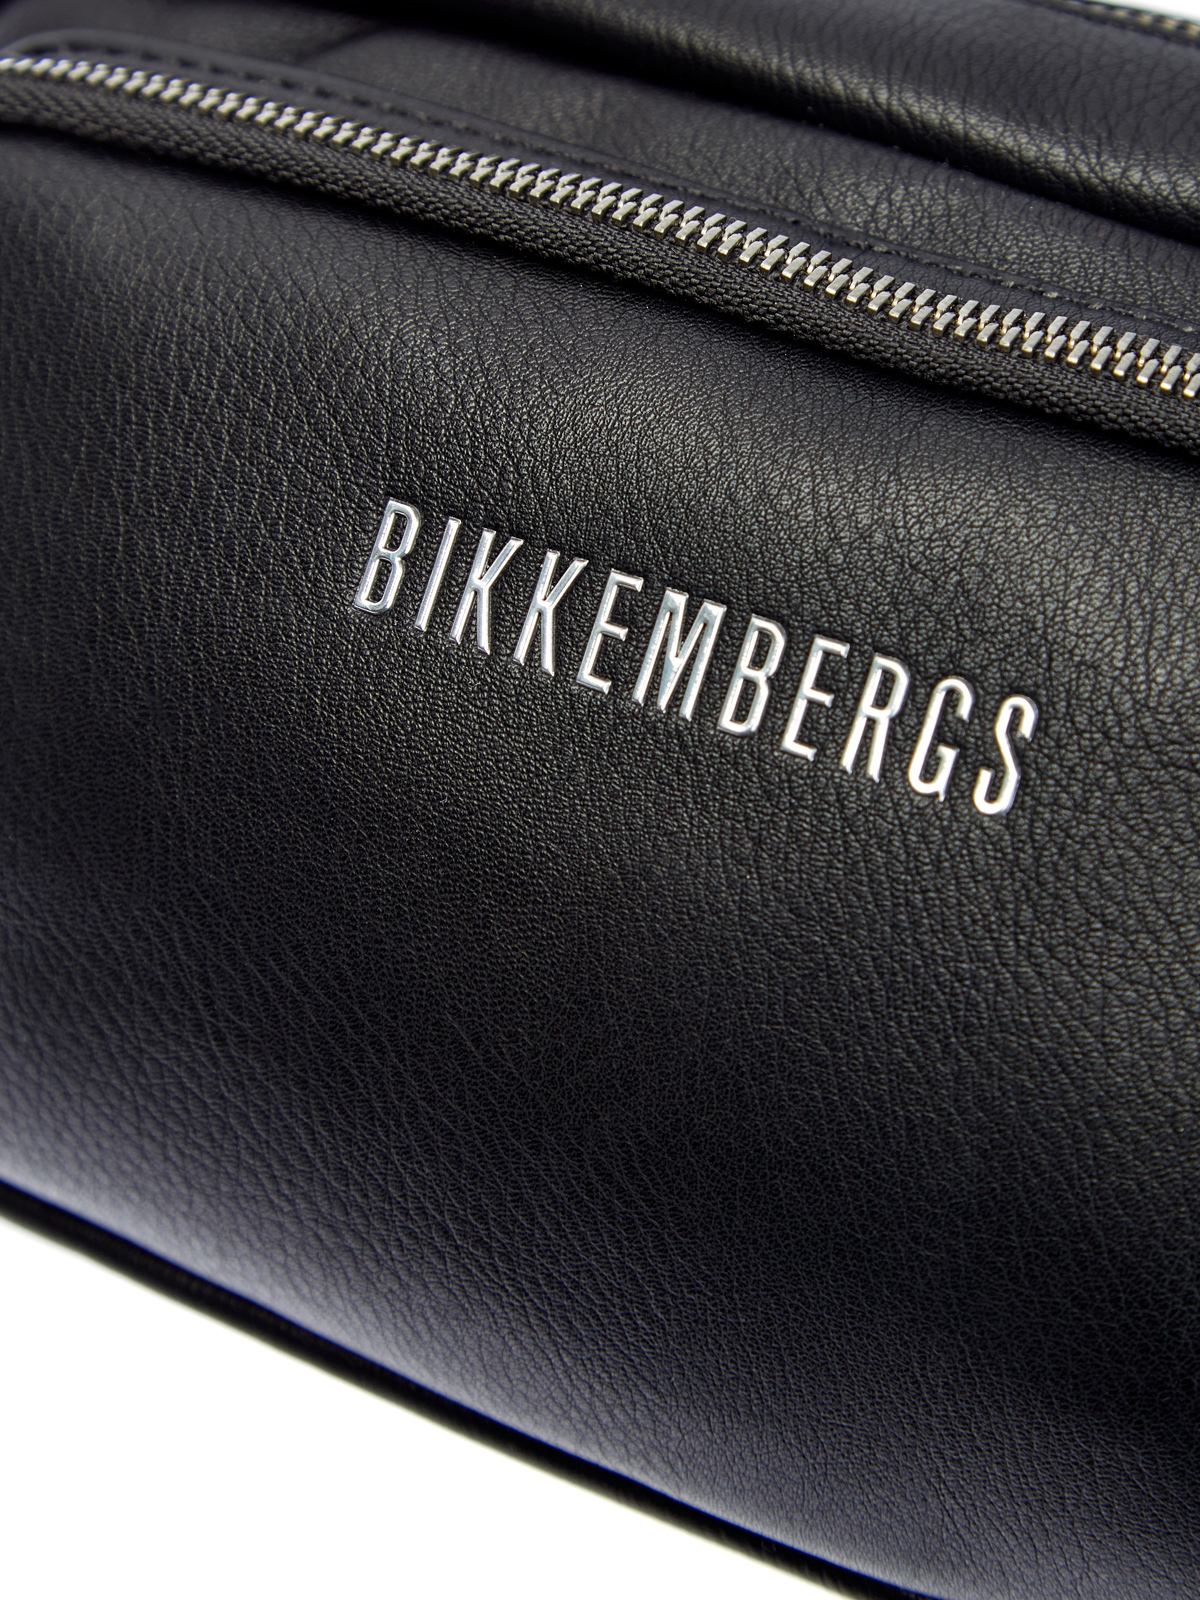 Поясная сумка с двумя отделениями и литым логотипом BIKKEMBERGS, цвет черный, размер 5;6;7;8;9 - фото 6